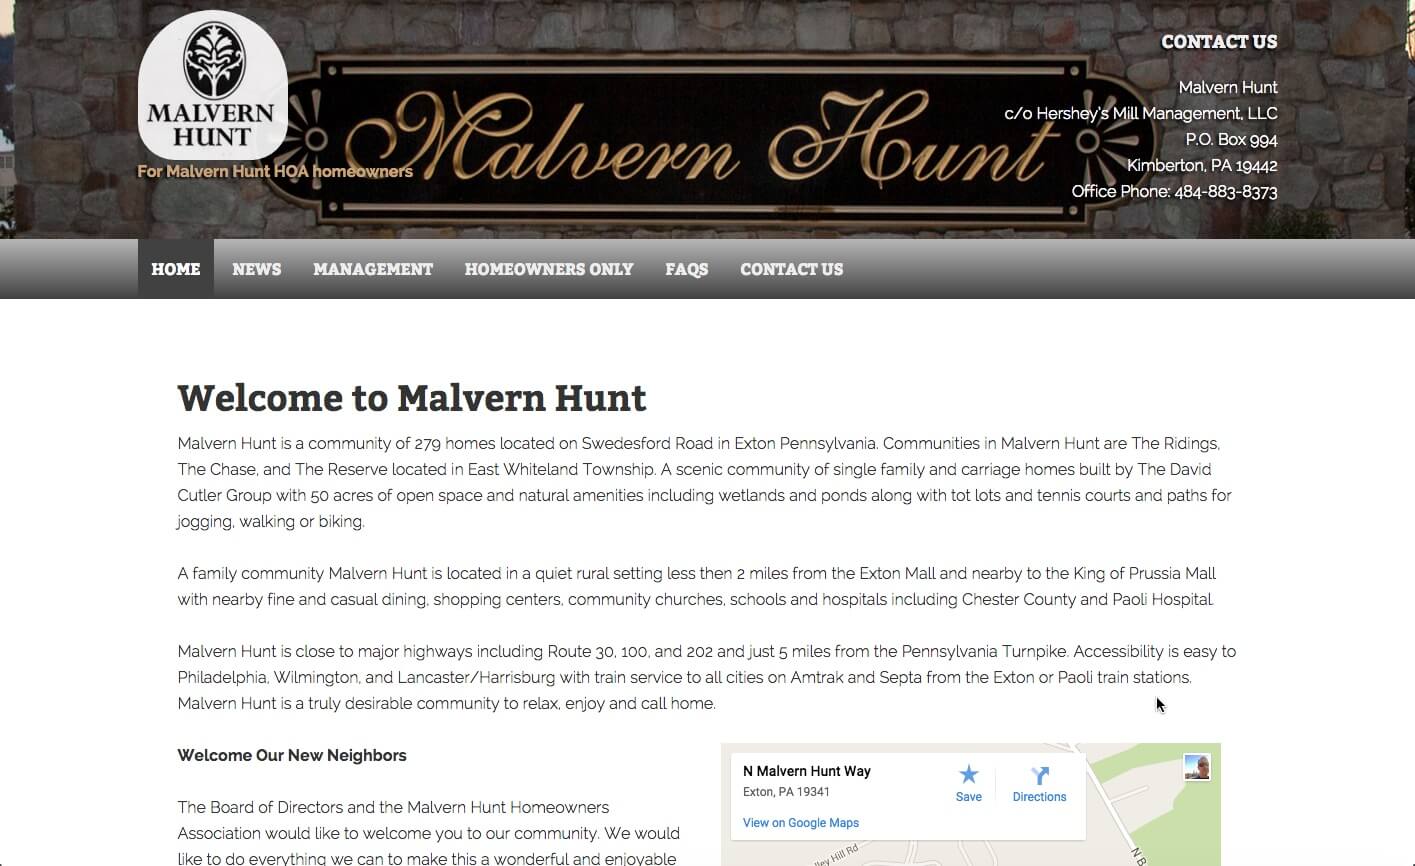 Update Malvern Hunt website